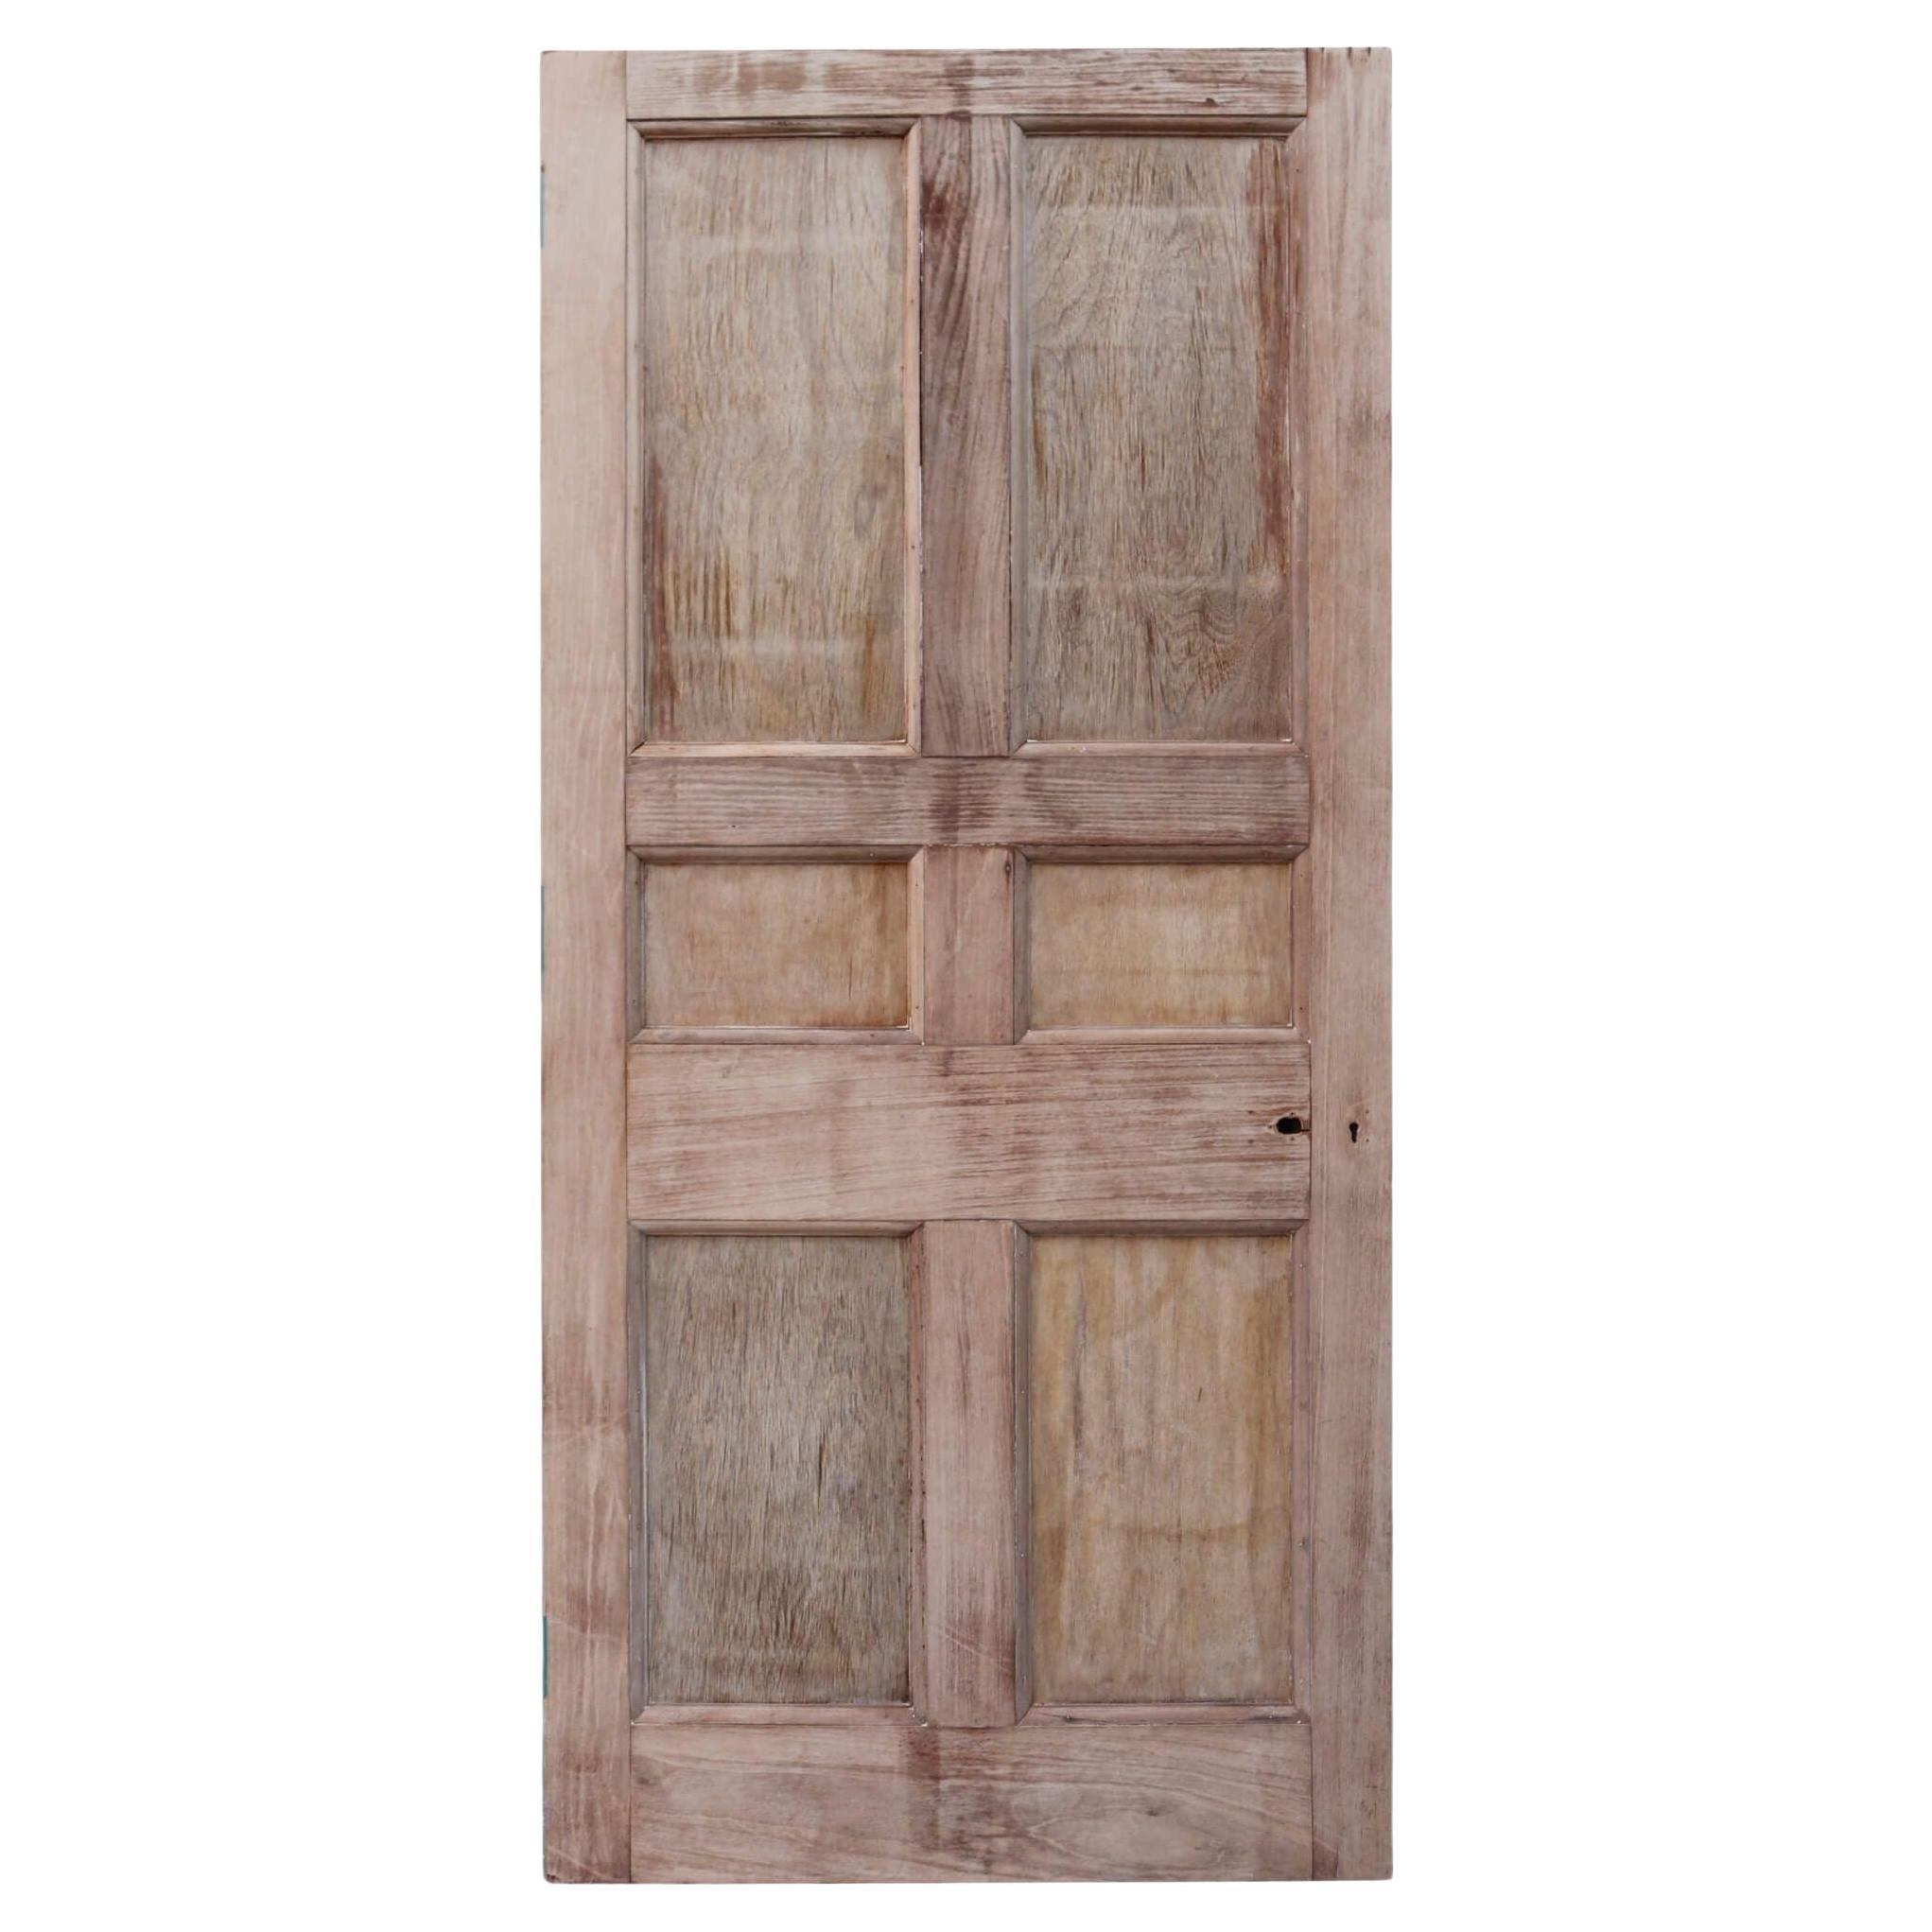 Antique 6 Panel Wooden Door